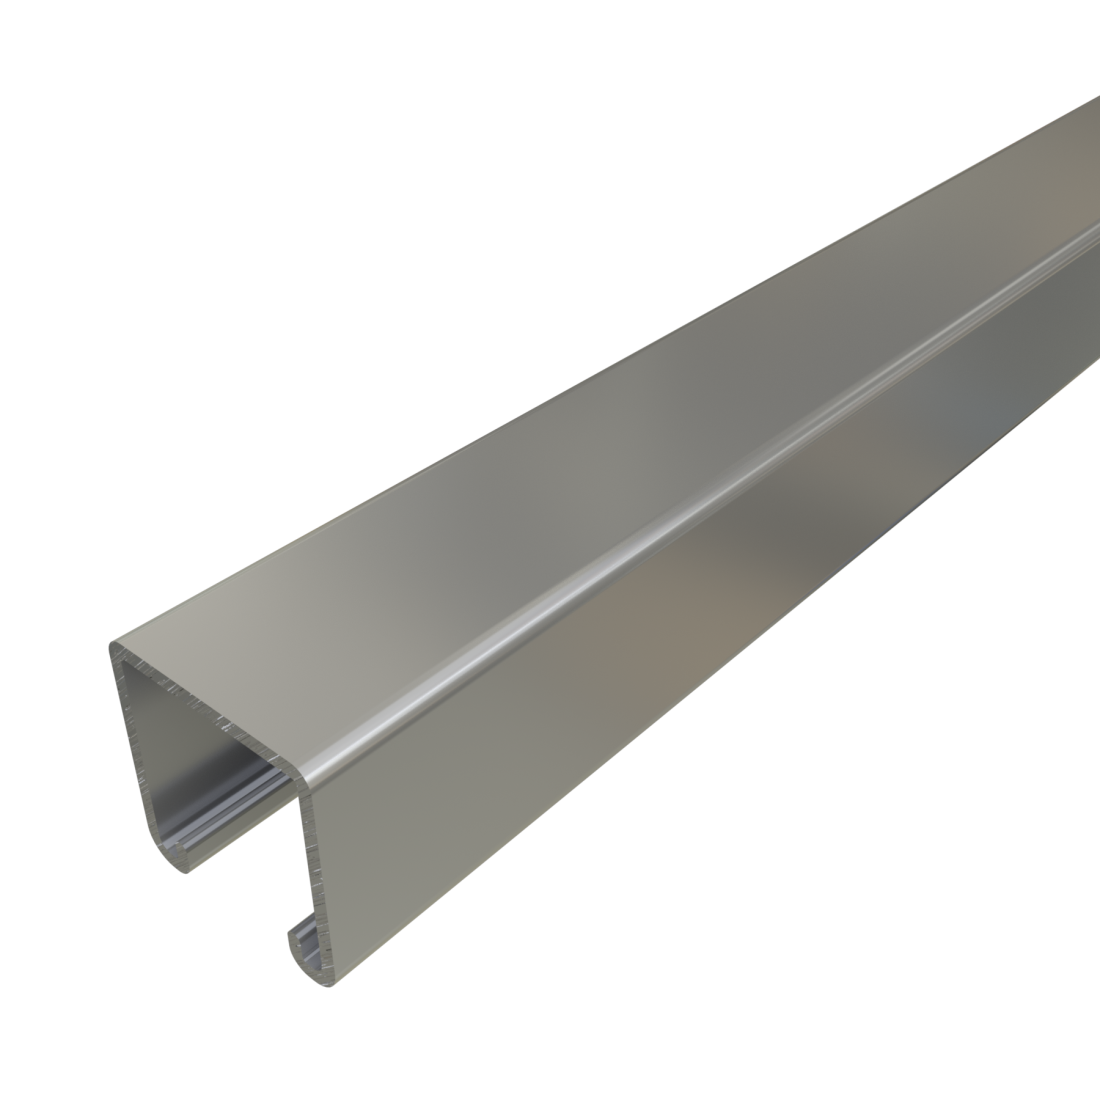 Unistrut P1000 - 1-5/8" x 1-5/8", 12 Gauge Channel, Metal Framing Strut, Solid